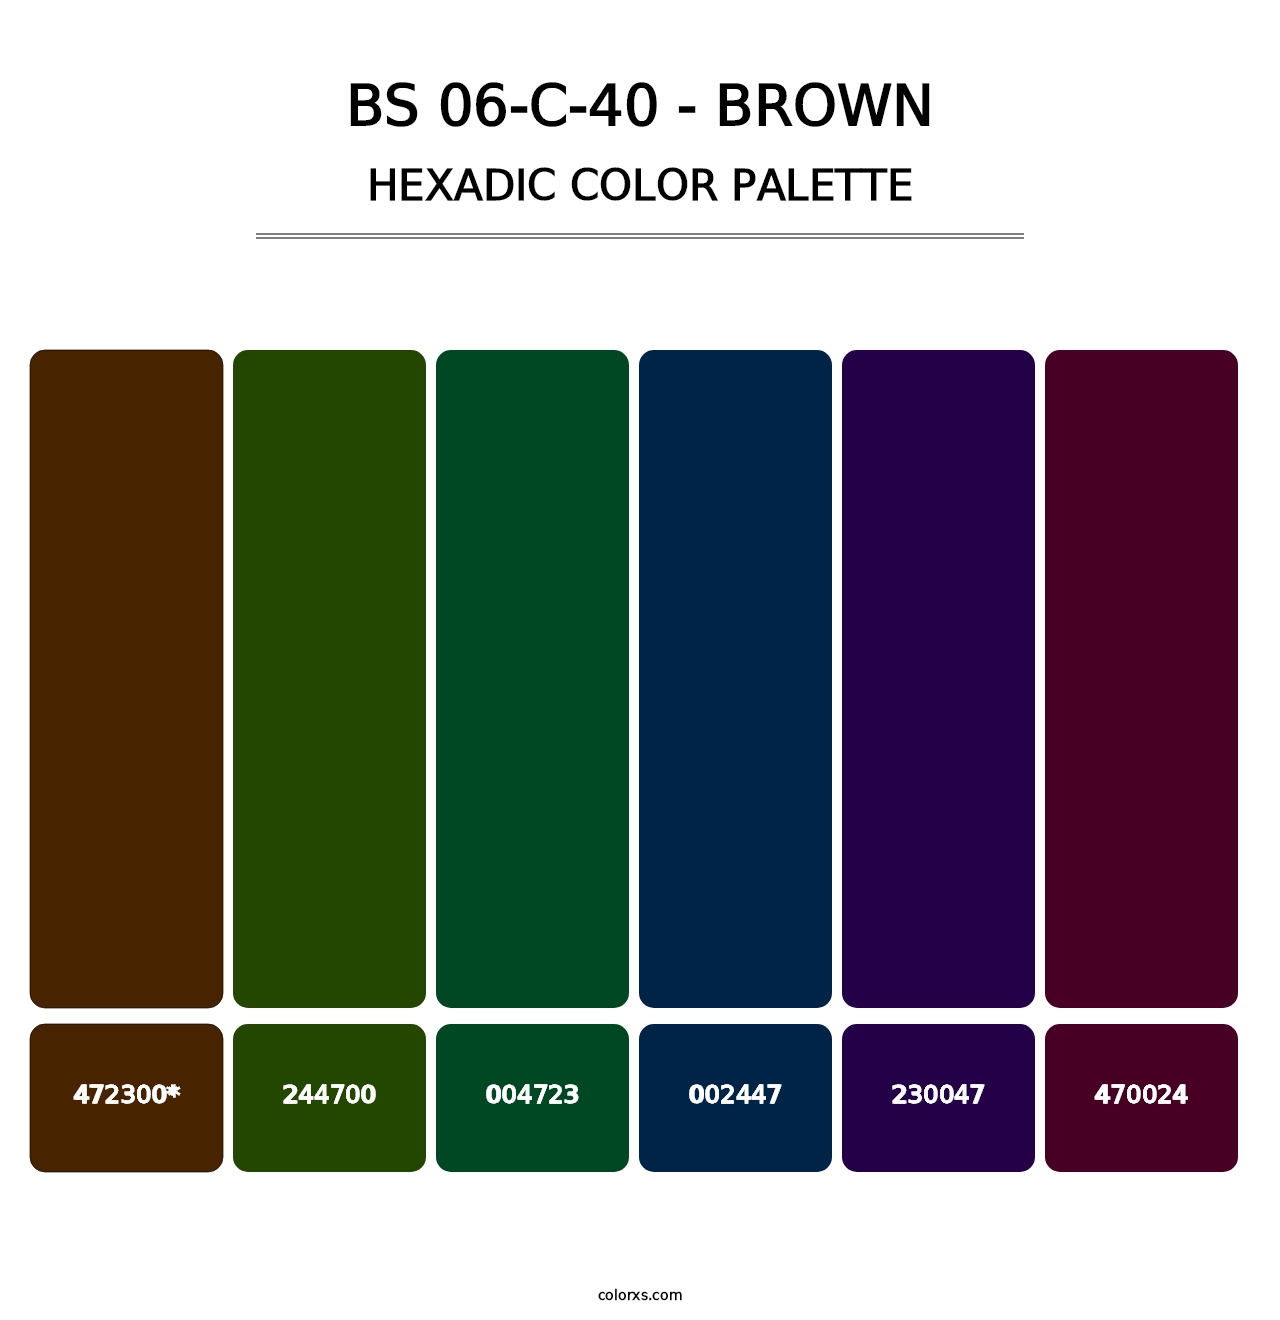 BS 06-C-40 - Brown - Hexadic Color Palette